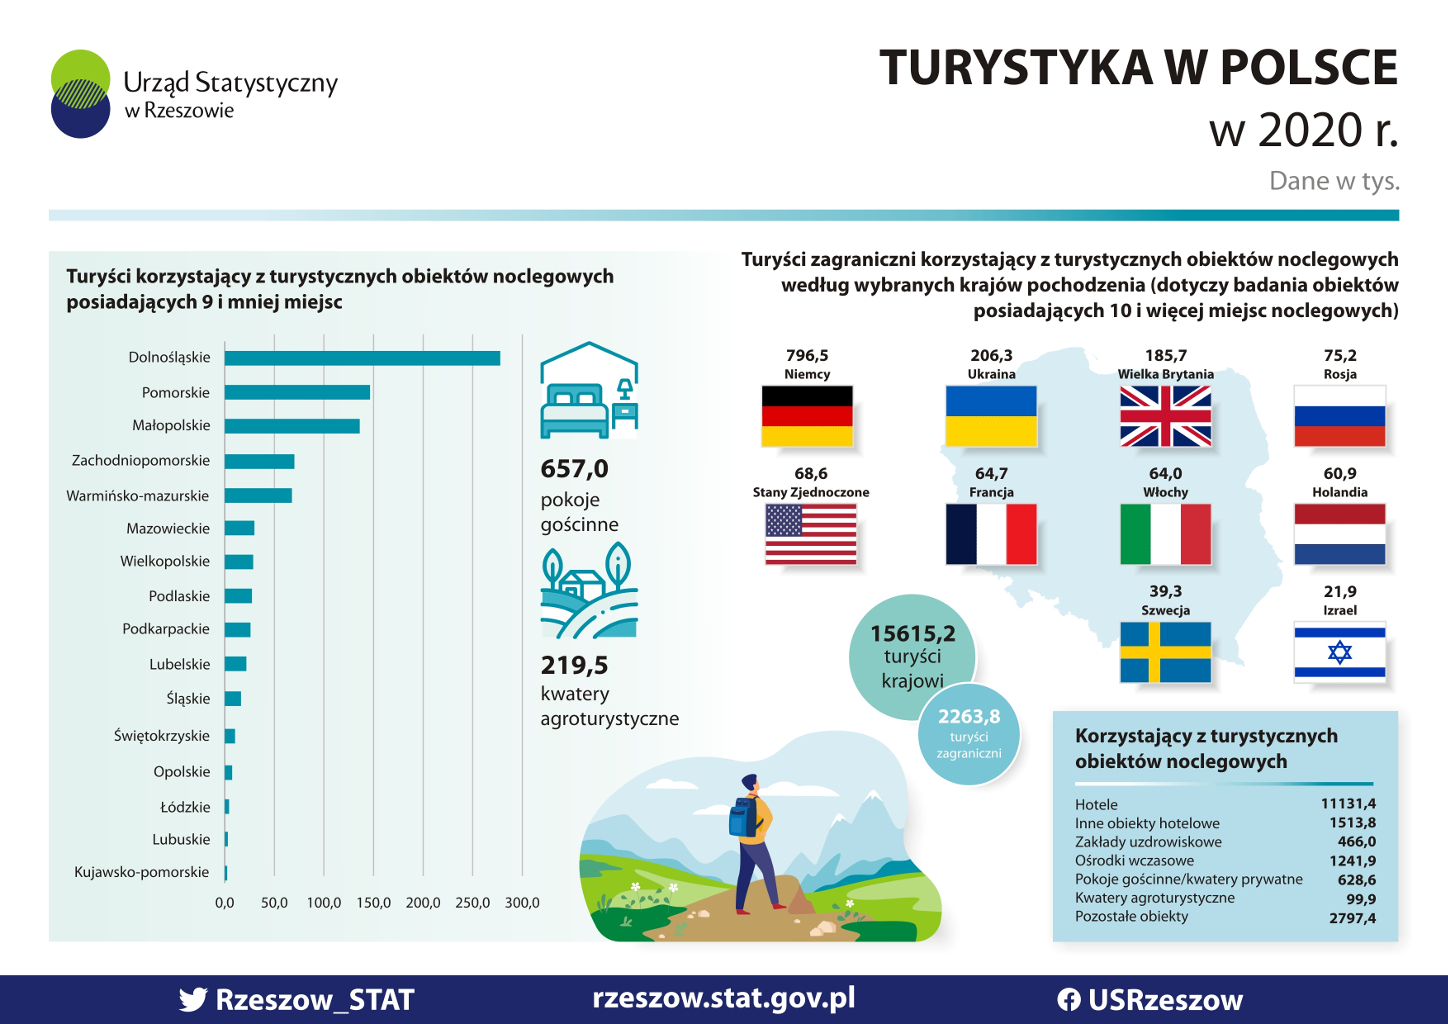 Grafika zawiera informację na temat Turystyki w Polsce w roku 2020. 